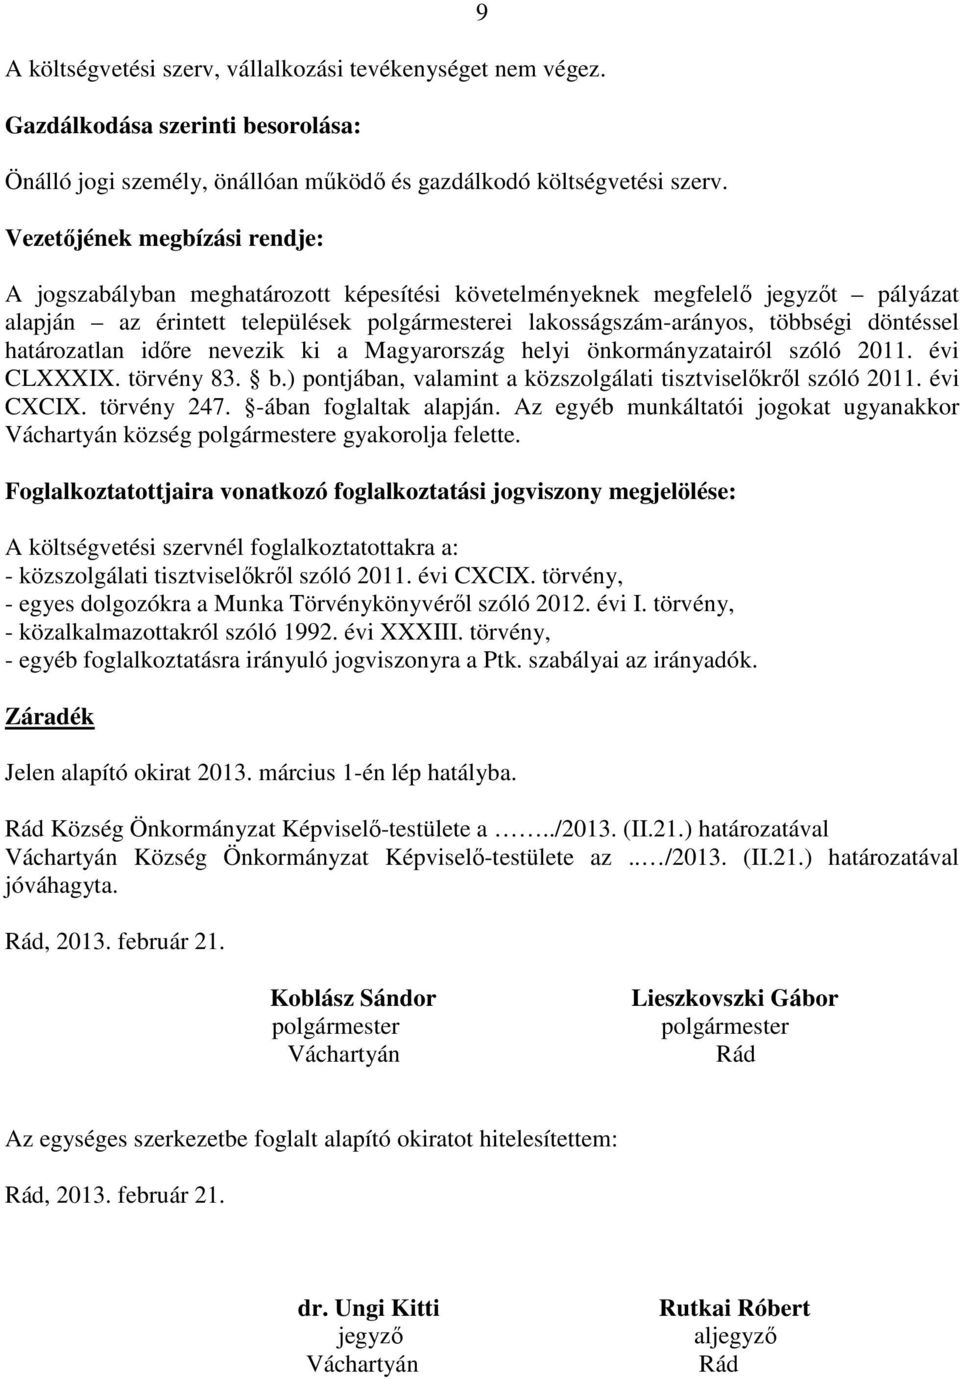 döntéssel határozatlan időre nevezik ki a Magyarország helyi önkormányzatairól szóló 2011. évi CLXXXIX. törvény 83. b.) pontjában, valamint a közszolgálati tisztviselőkről szóló 2011. évi CXCIX.